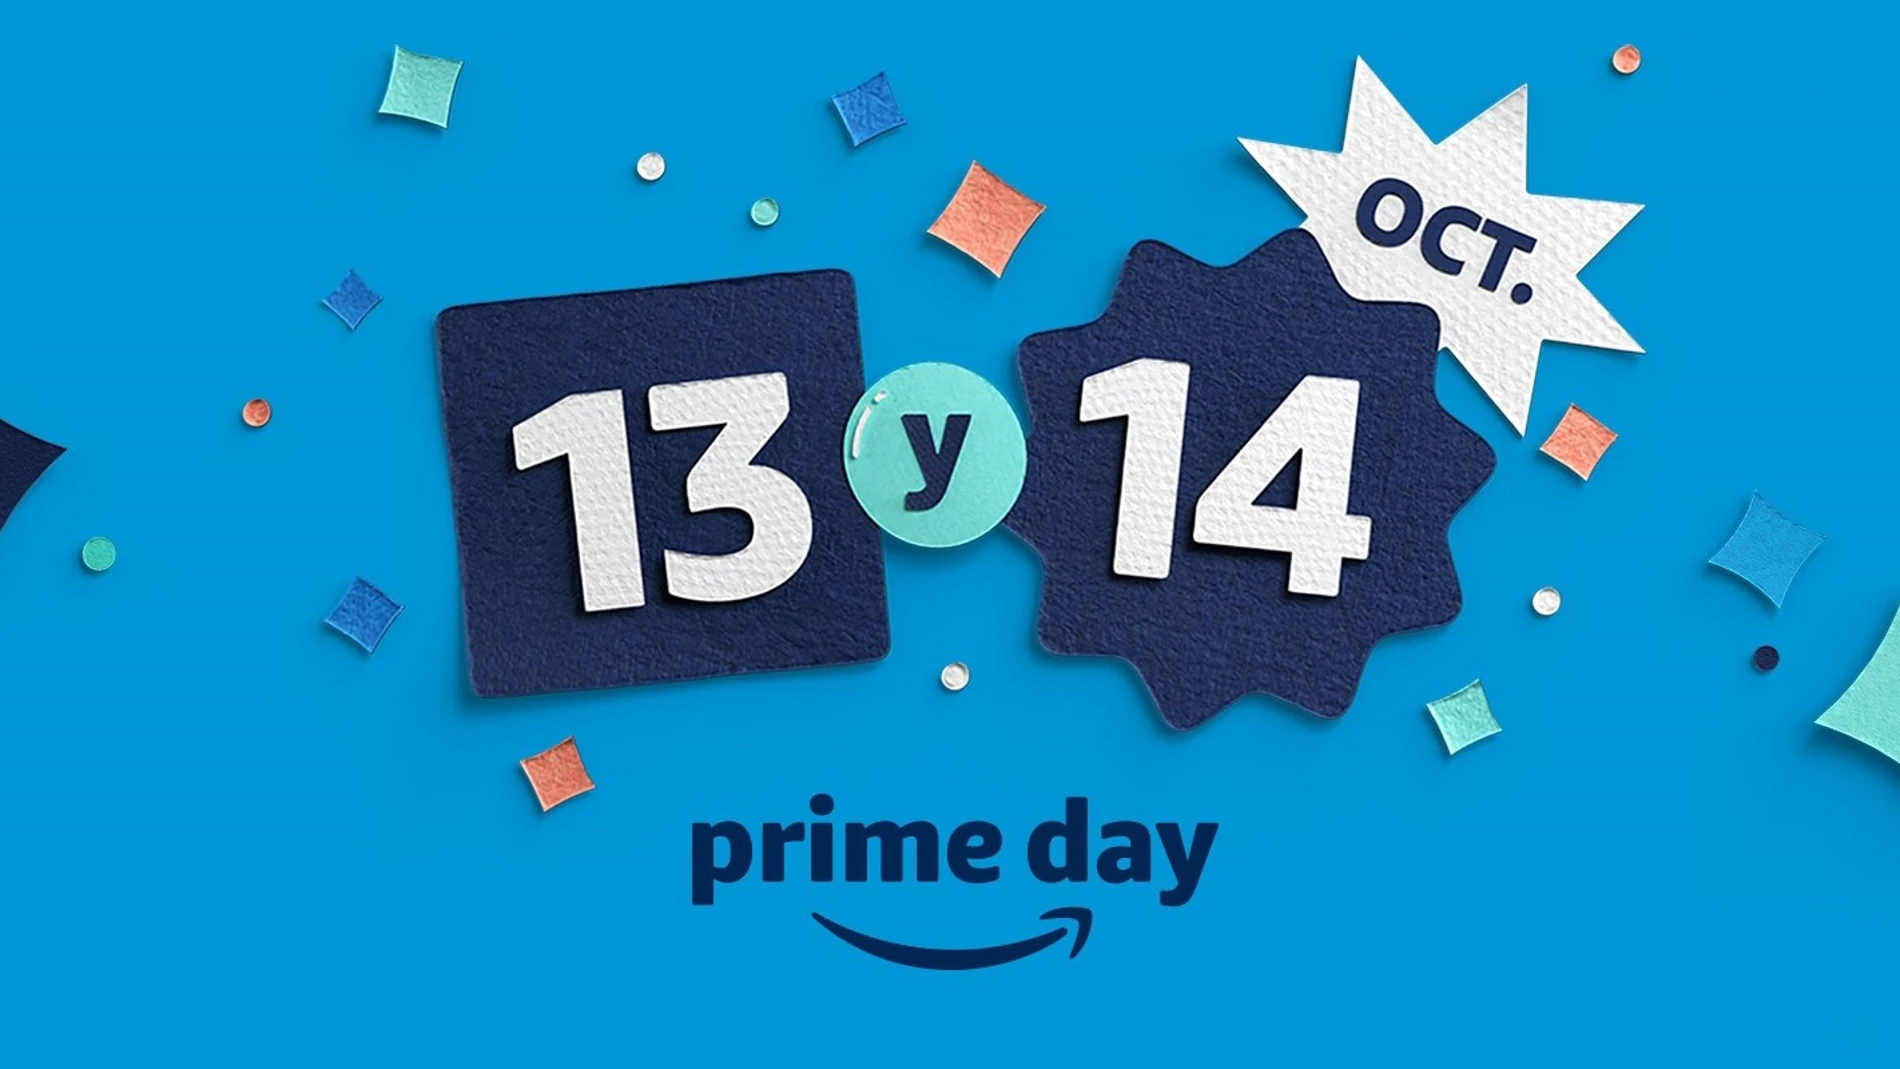 Amazon celebrará el Prime Day con más de un millón de ofertas